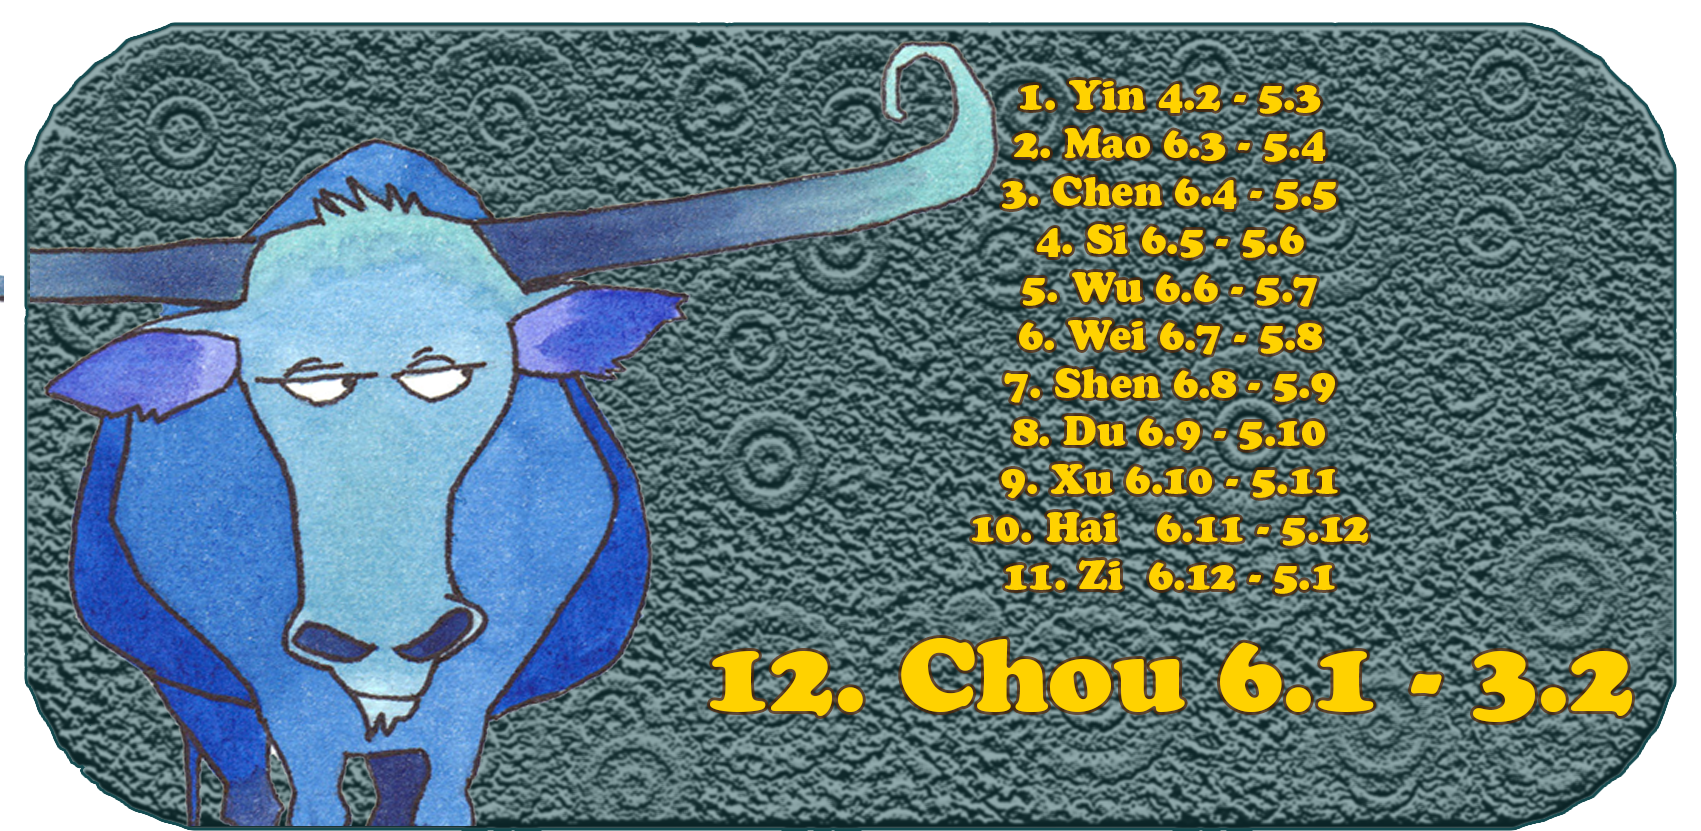 Zodíaco Chinês | Os Doze Animais Chineses | Boi, Janeiro, Mês 12, Chou